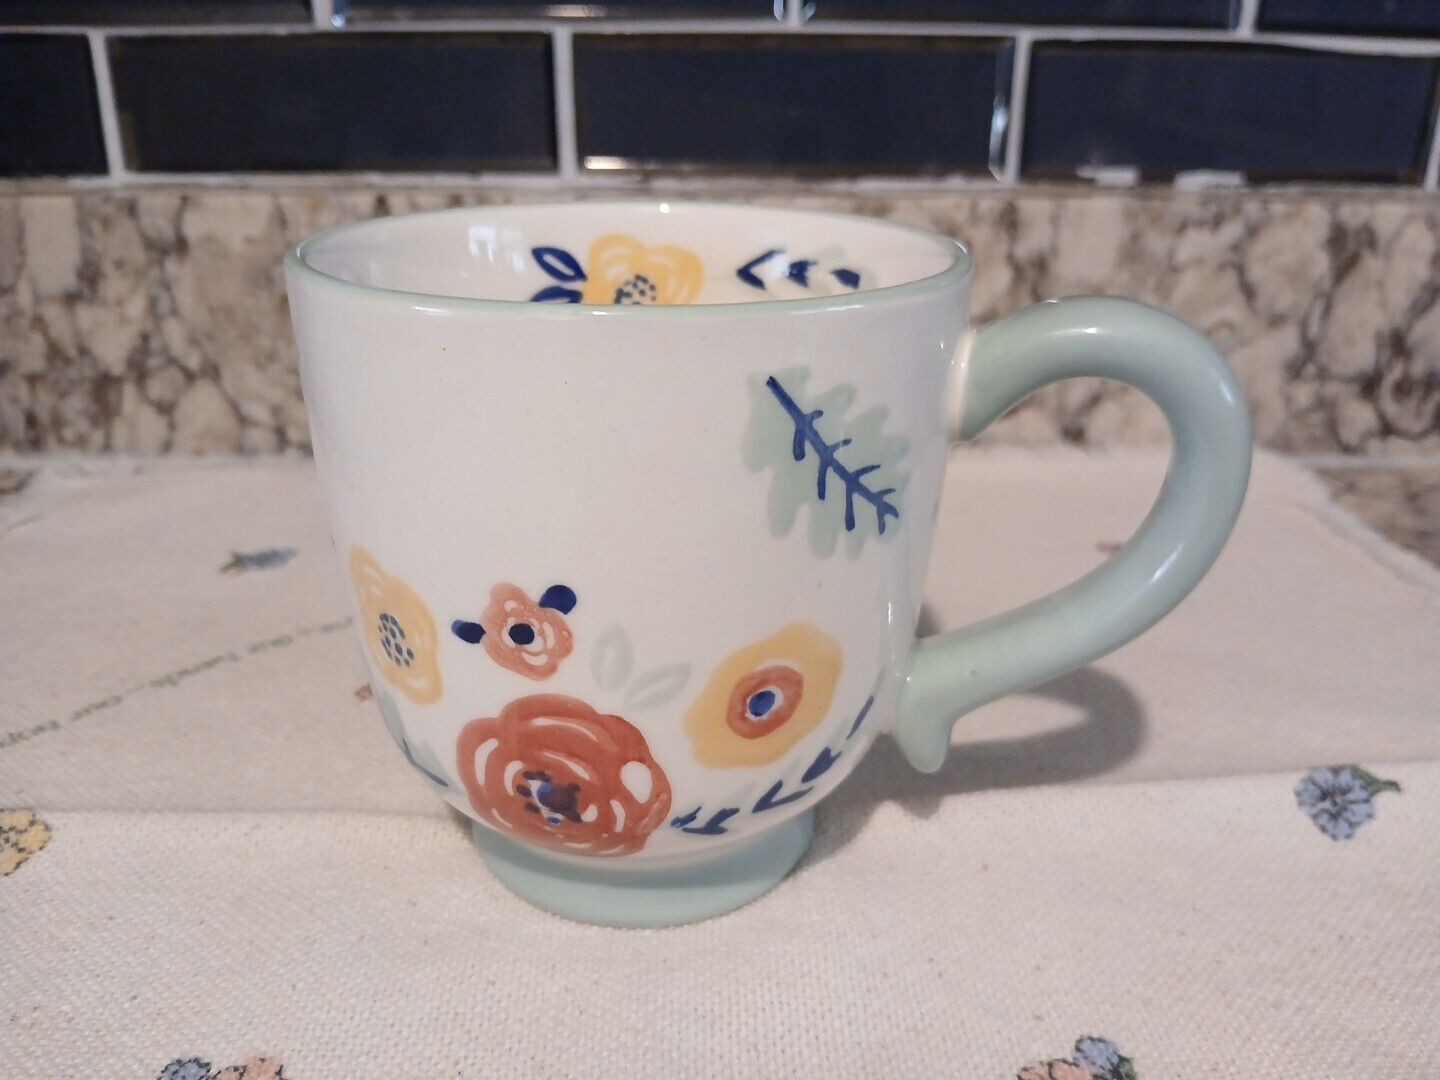 Potters Studio Coffee / Tea Mug Hand-painted Flowers Ceramic 12 Oz